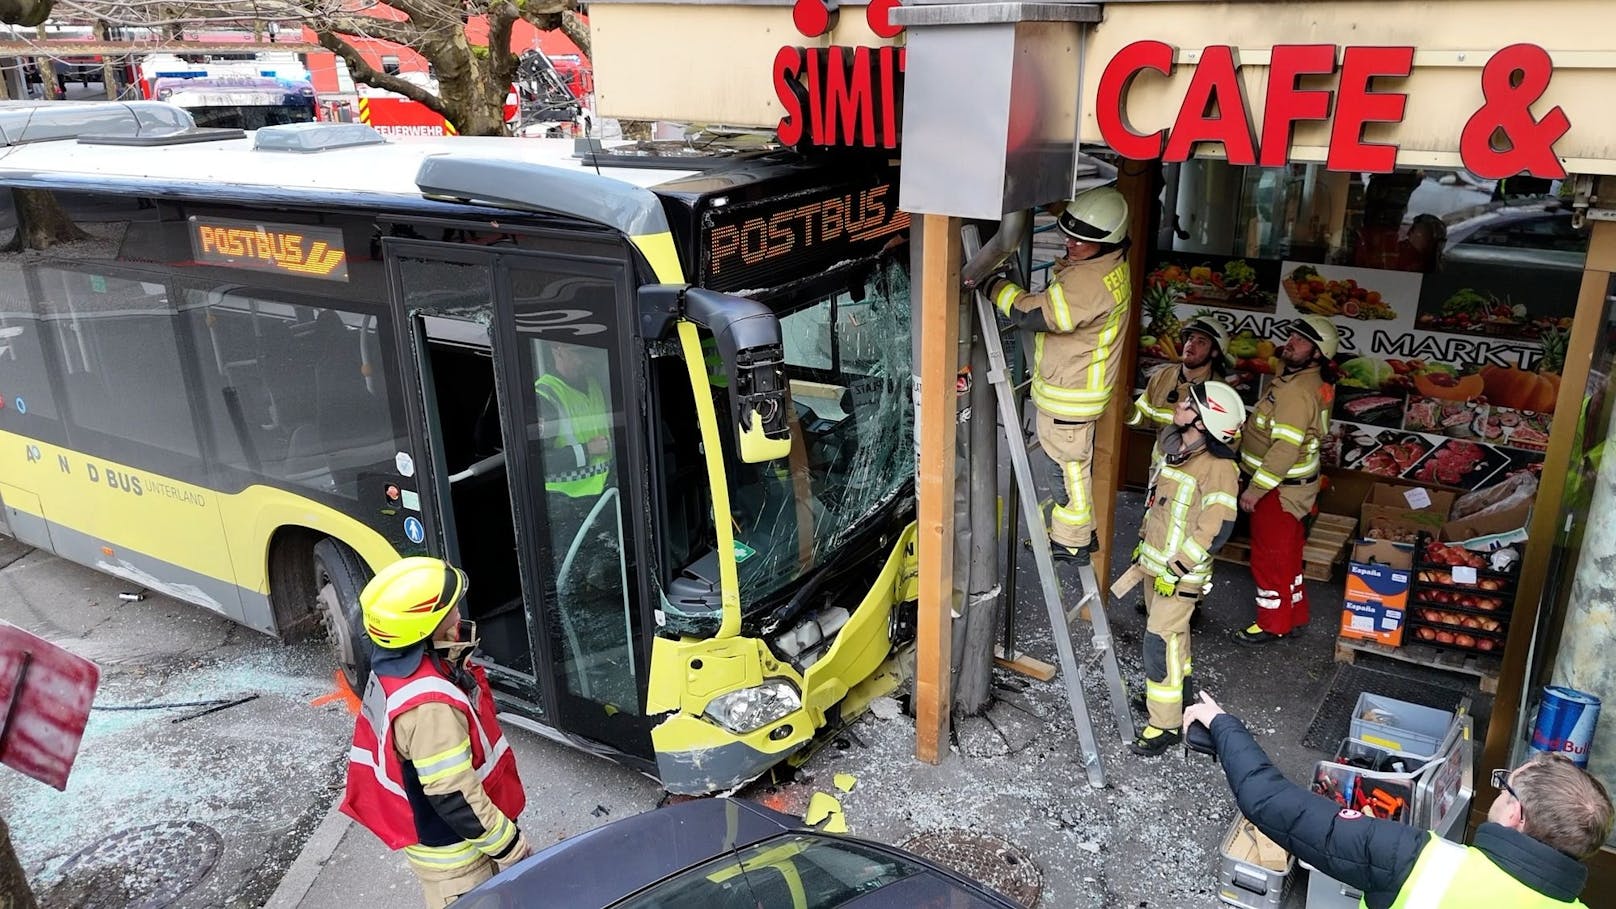 Postbus kracht in Café – zwei Verletzte